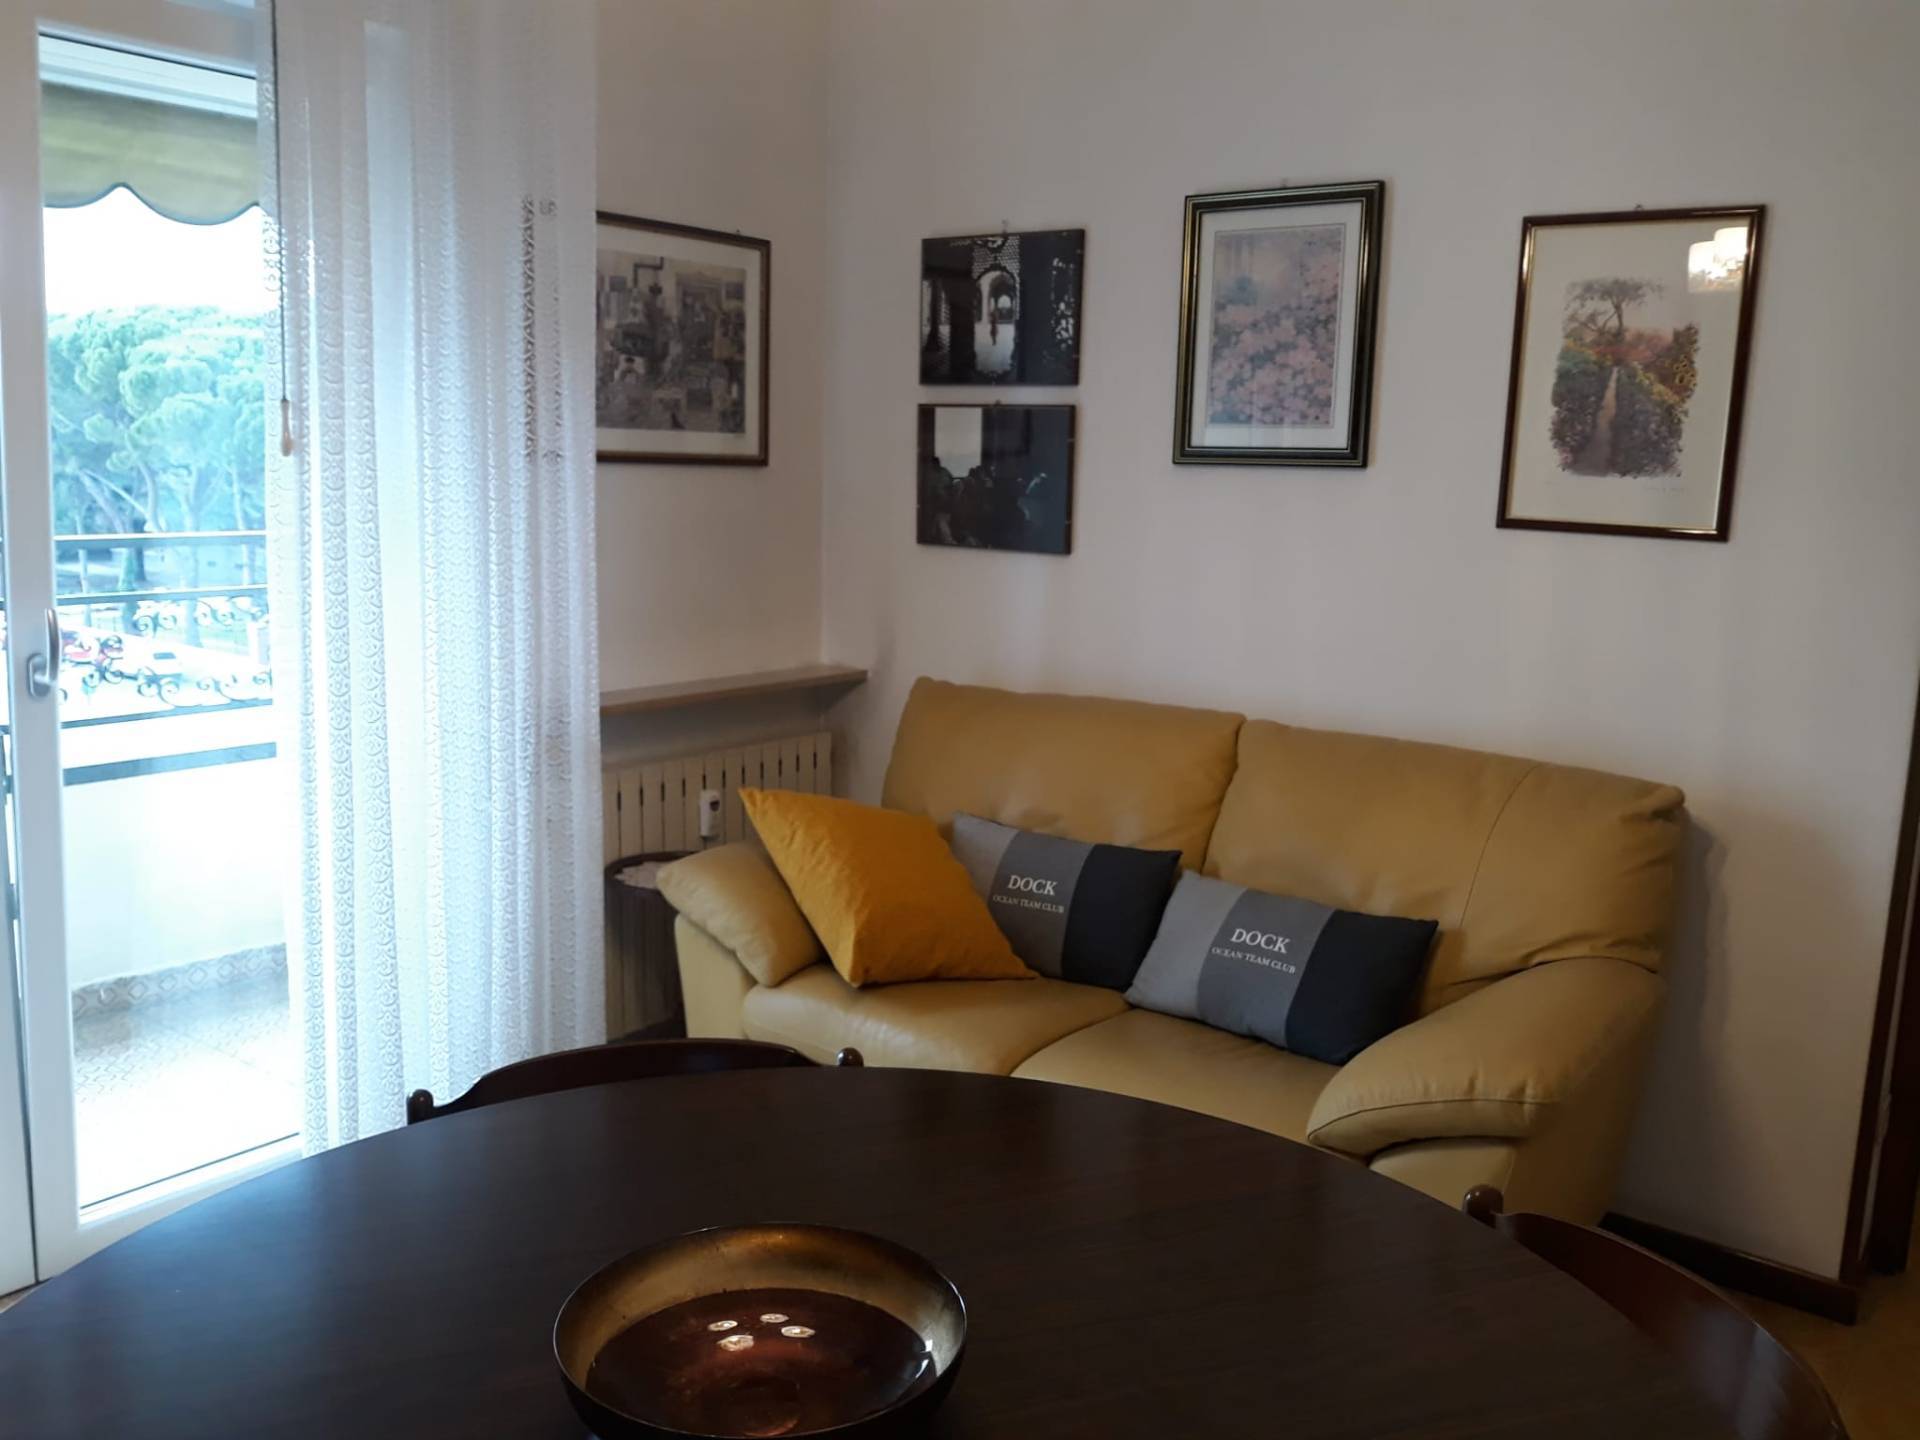 Appartamento in affitto Gorizia